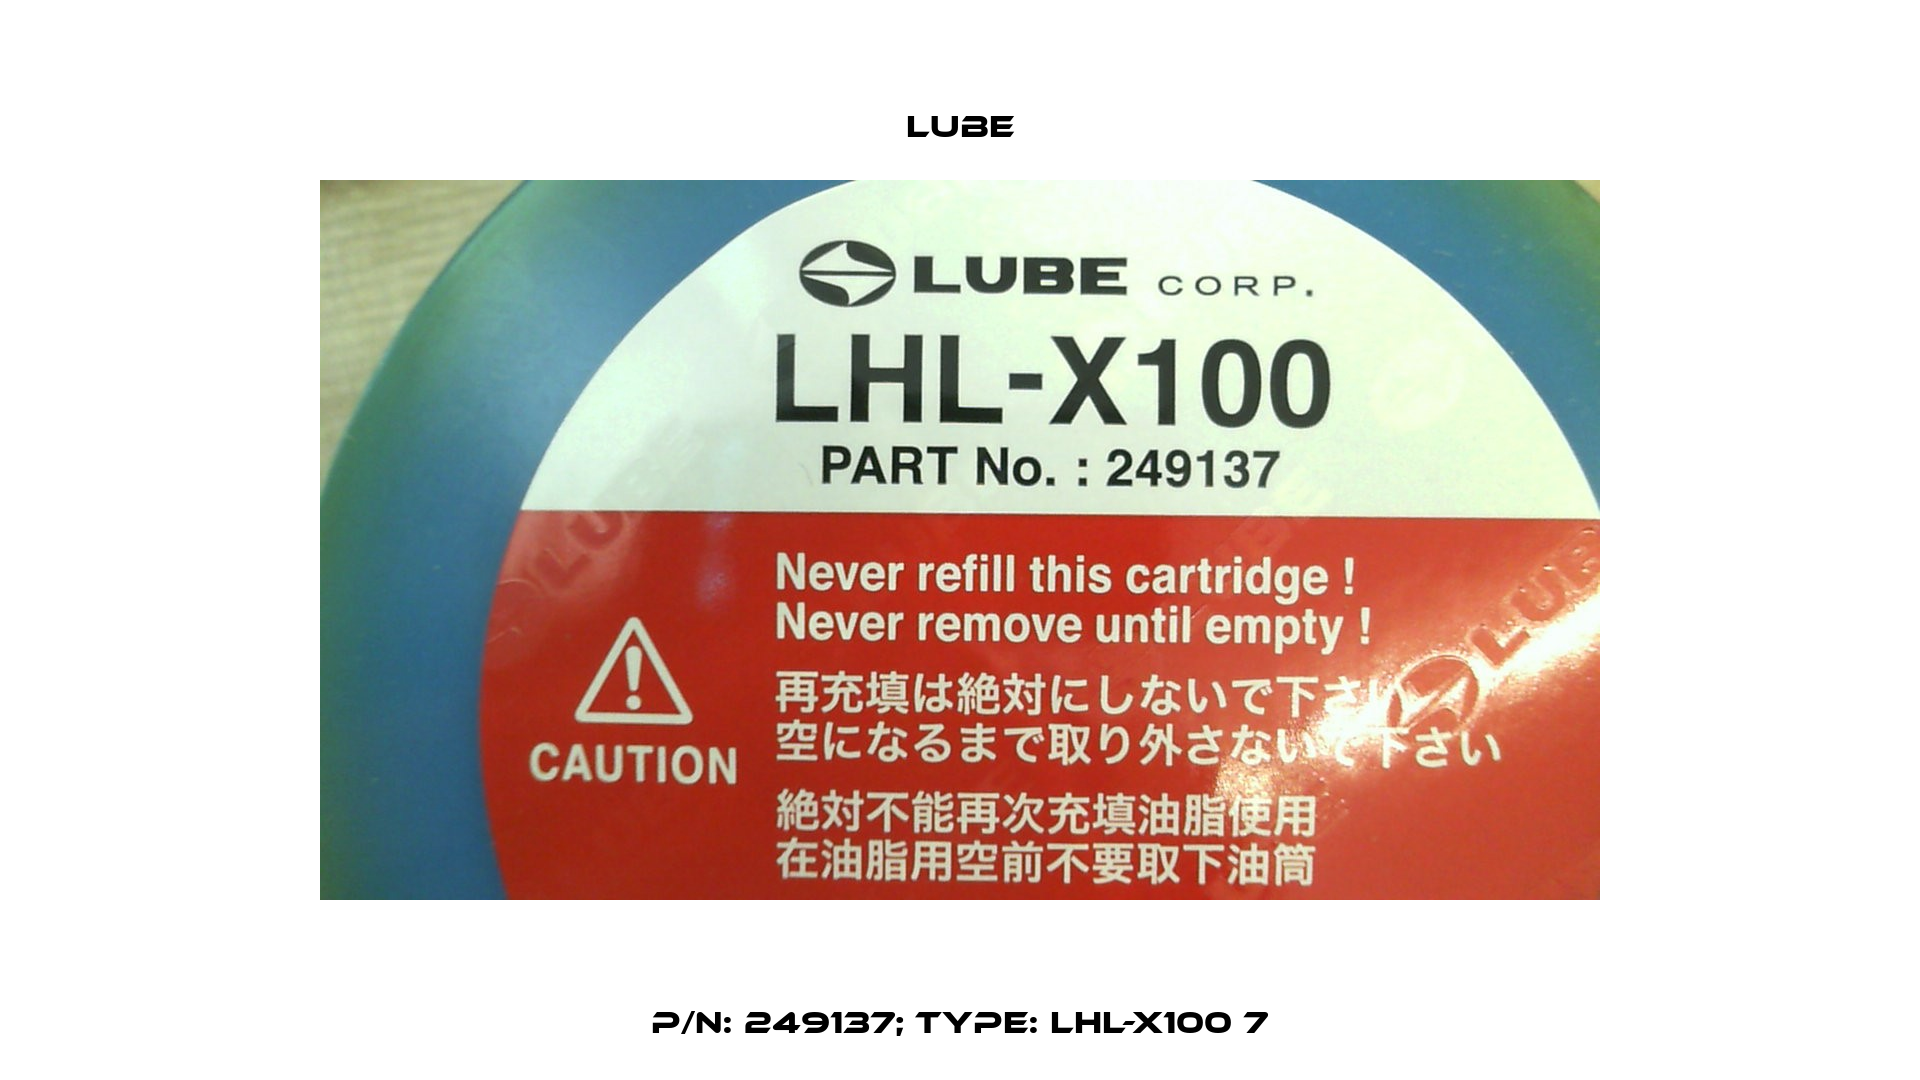 P/N: 249137; Type: LHL-X100 7 Lube